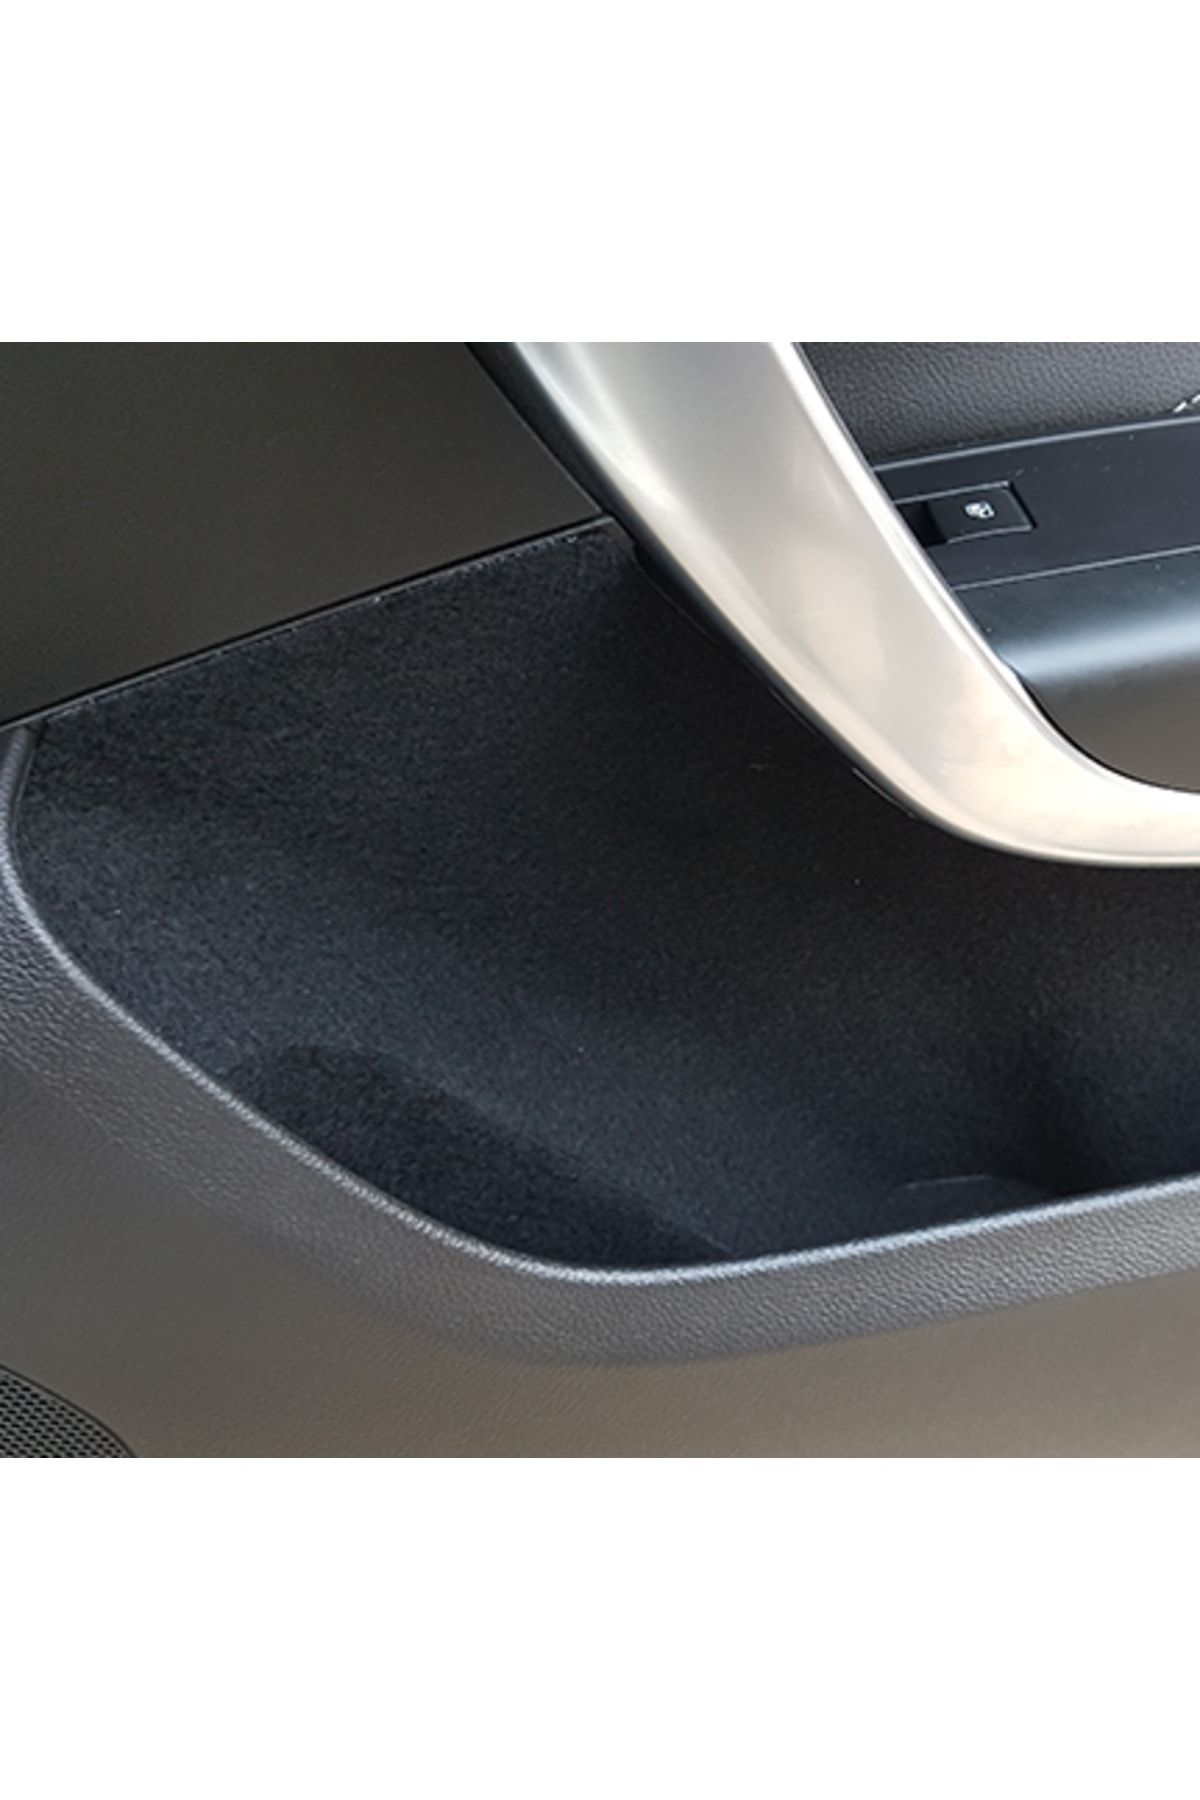 GRAFICAR DESIGN Opel Insignia Comfort Set - Interior Trim Fabric Velvet  Coating - Product for Sound Insulation Purposes 2009-2017 - Trendyol